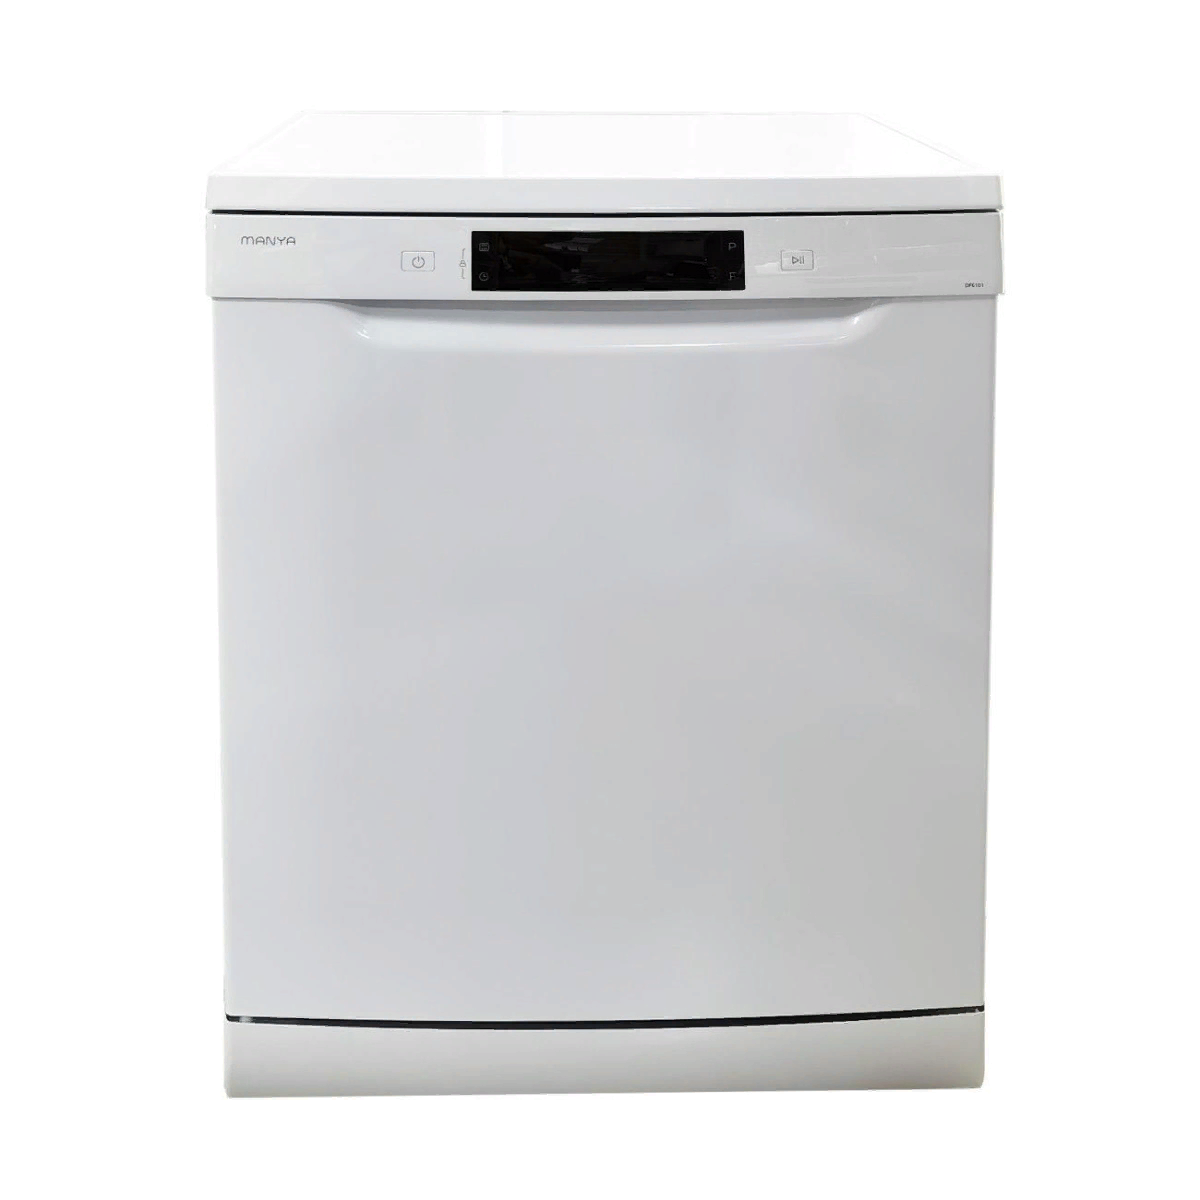 Посудомоечная машина 45 см Manya DF4101, белый